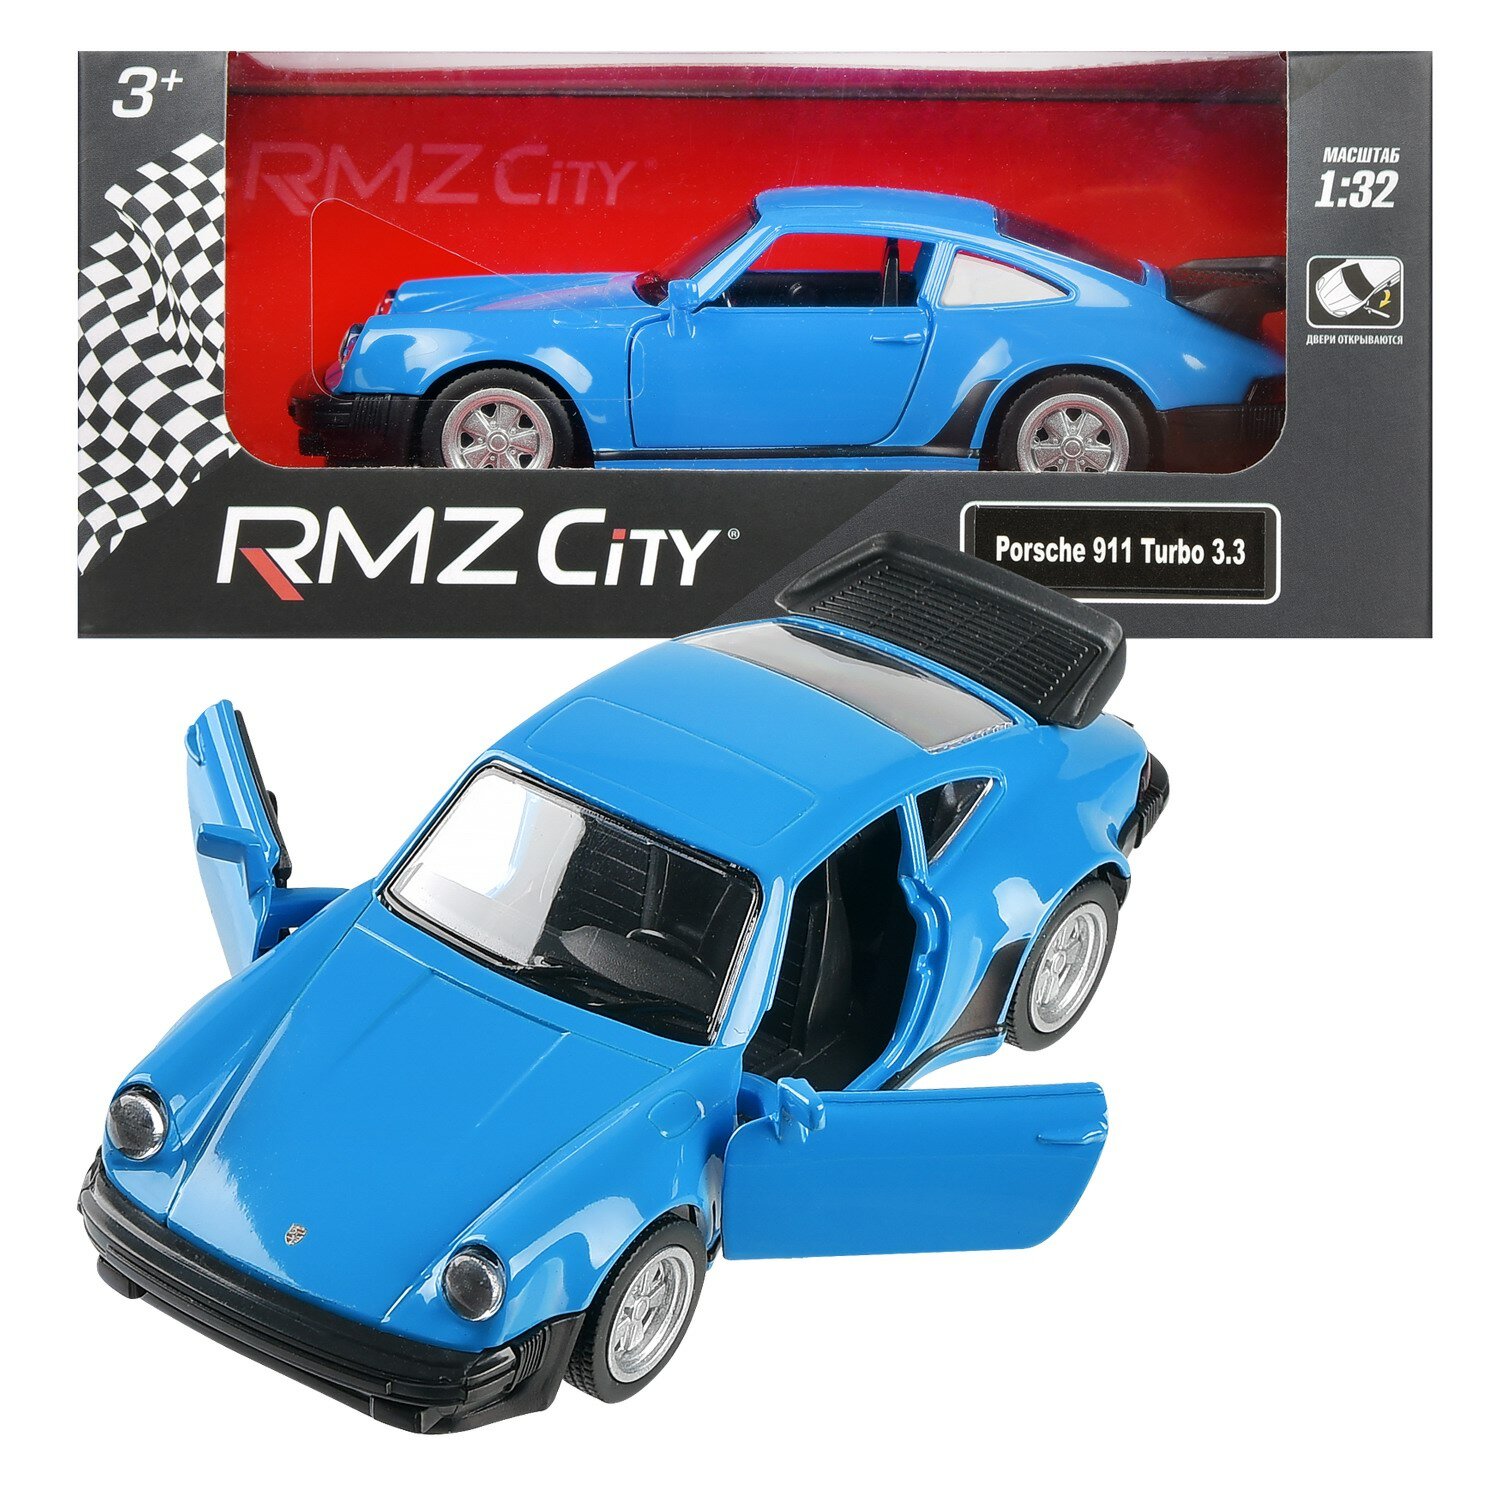 Машина Uni-Fortune "RMZ City", Porsche 930 Turbo (1975-1989), металл, масштаб 1:32, синяя, инерционная, двери открываются